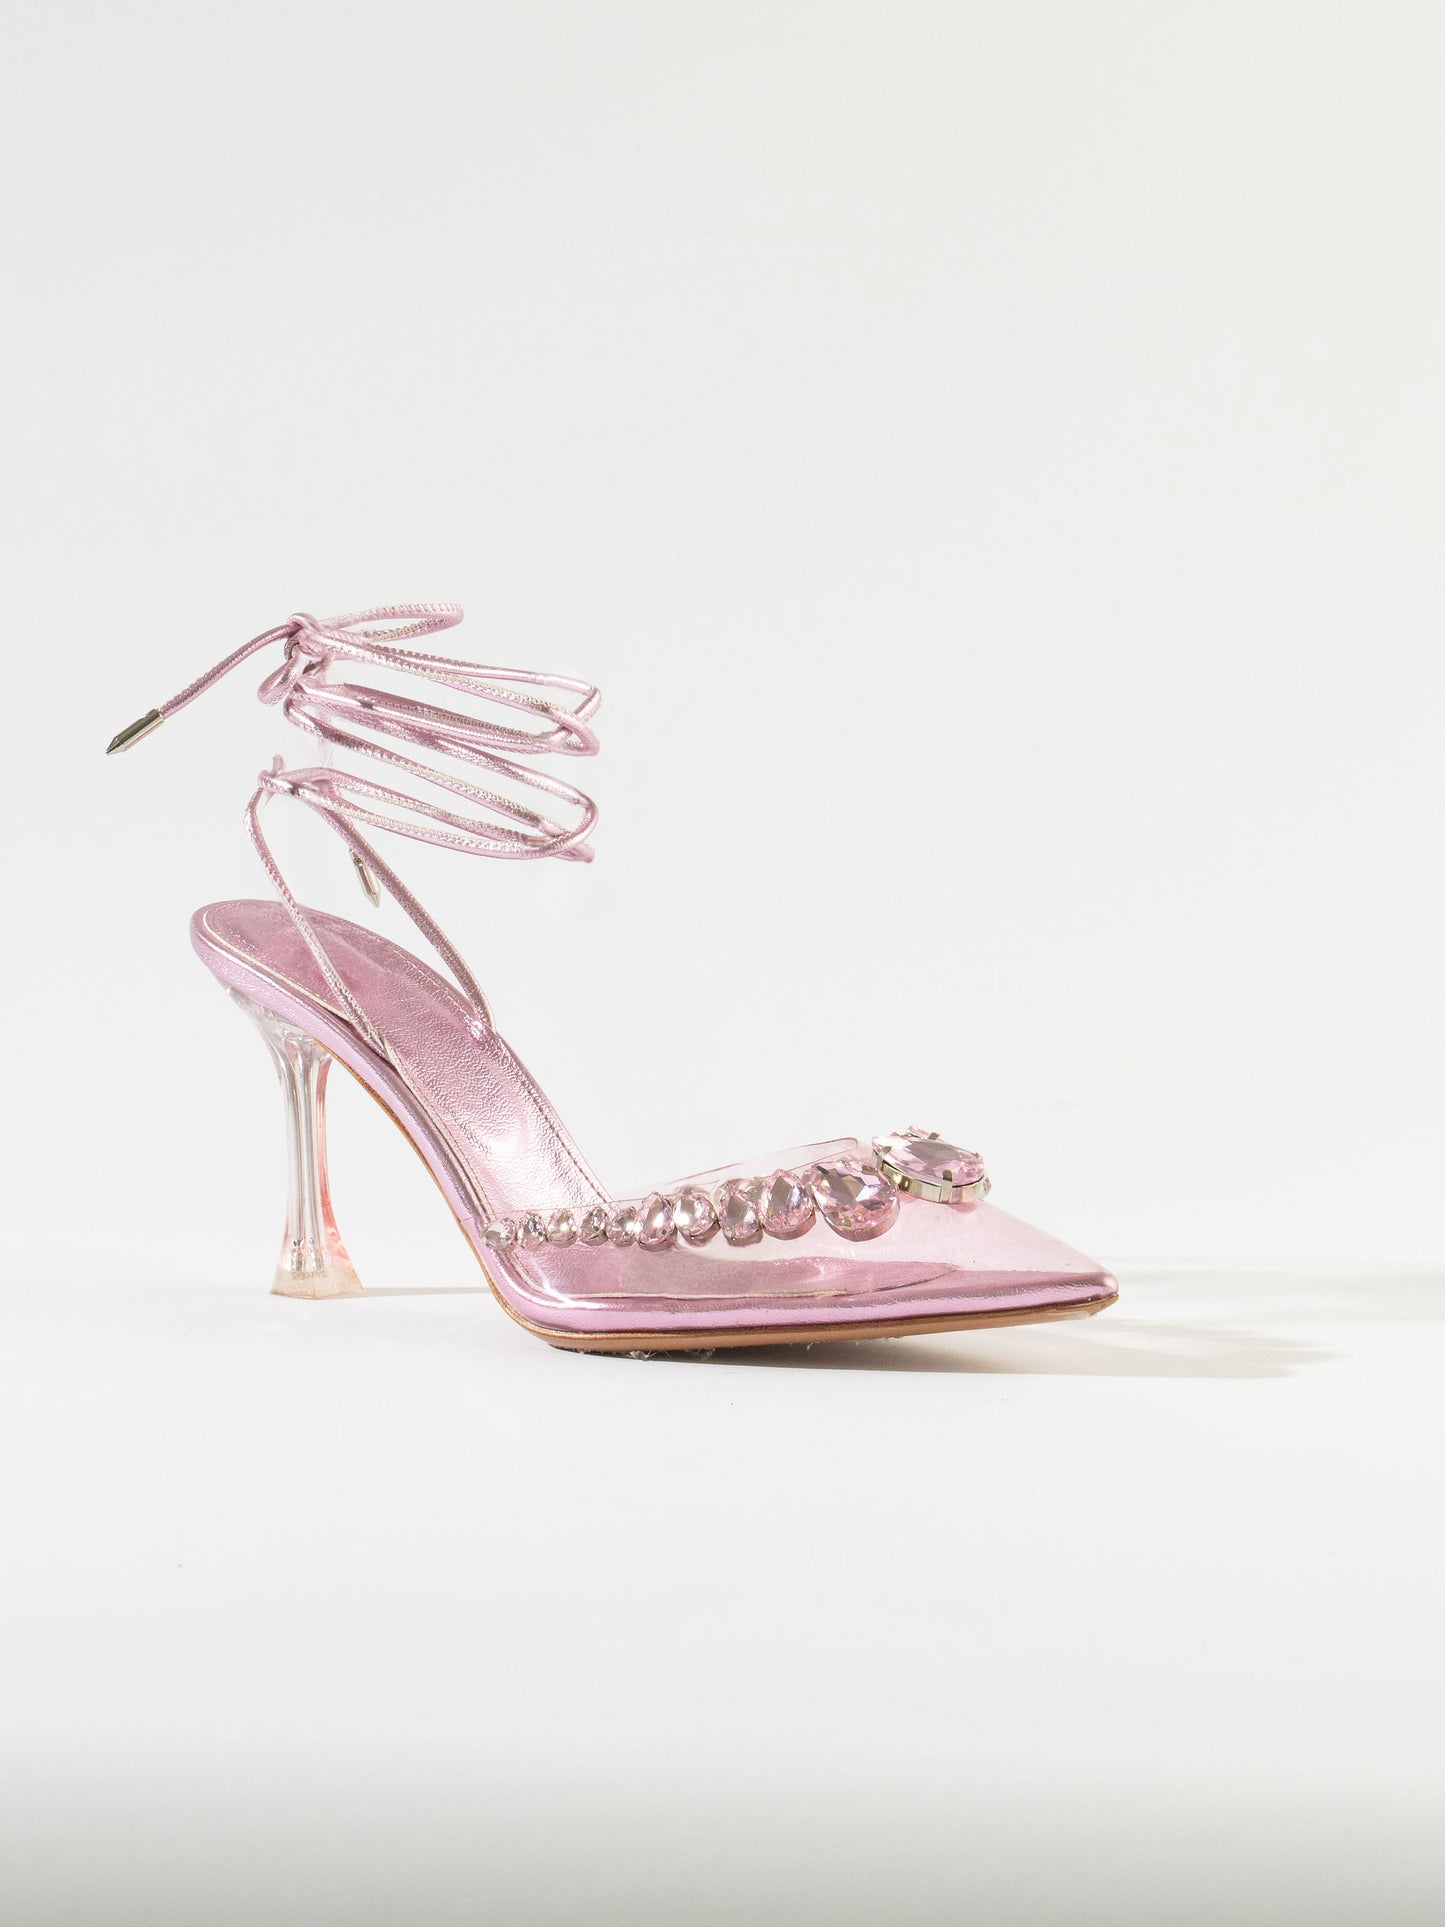 Wonderland Dimond Crystal Embellished Strappy 80MM Sandals - Baby Pink